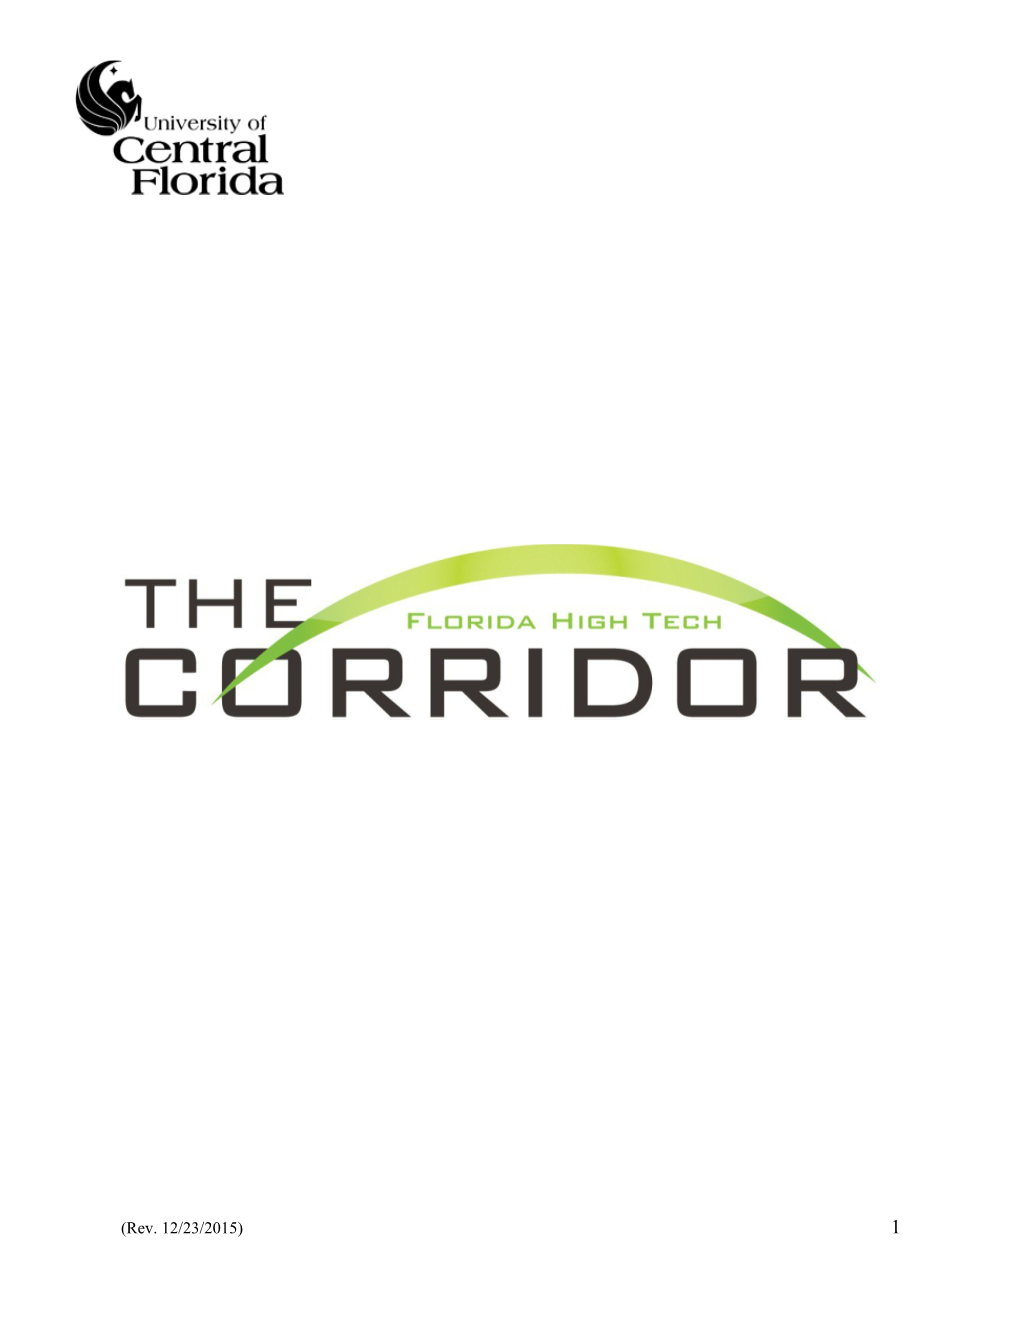 Florida High Tech Corridor Council Phase II SBIR/STTR External Investment Program